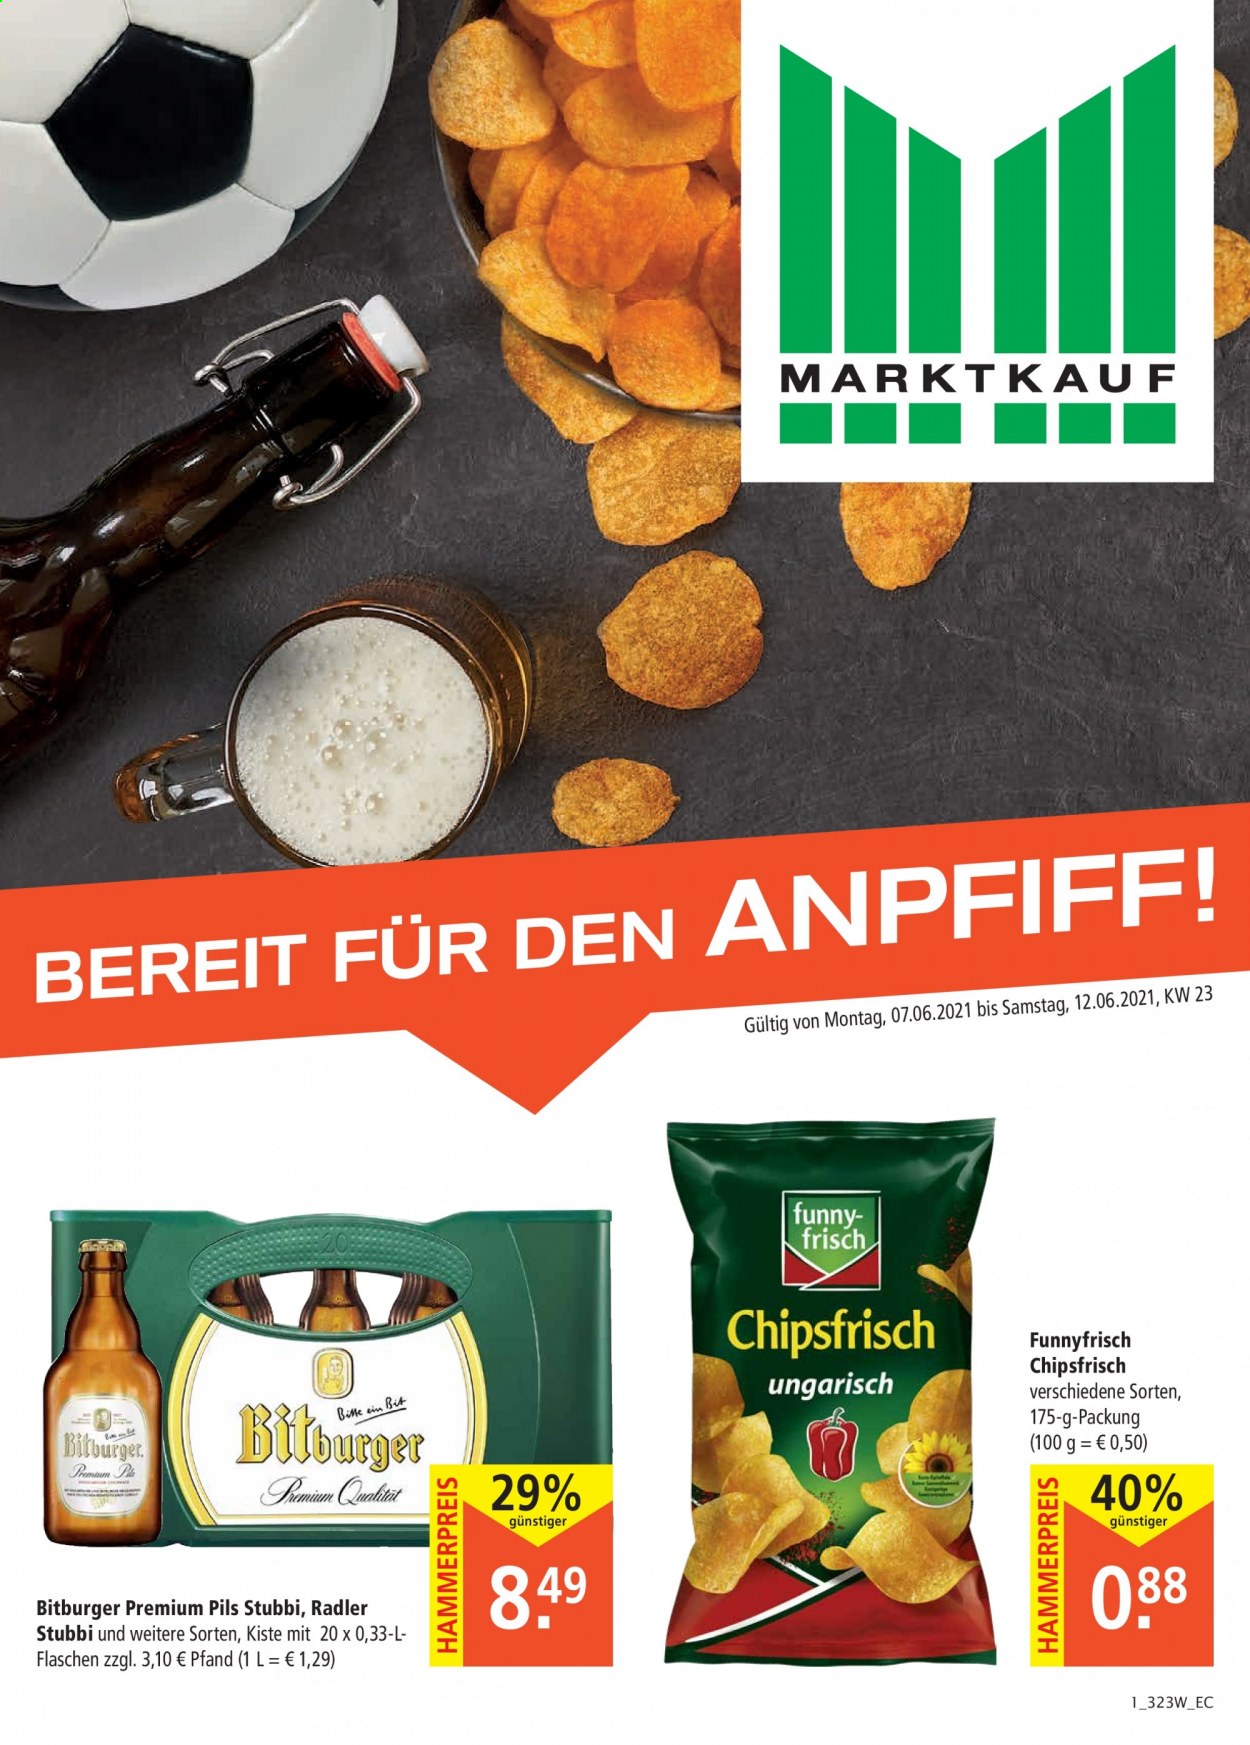 thumbnail - Prospekte Marktkauf - 7.06.2021 - 12.06.2021 - Produkte in Aktion - Bitburger, Bier, Radler, Chips, Chipsfrisch. Seite 1.